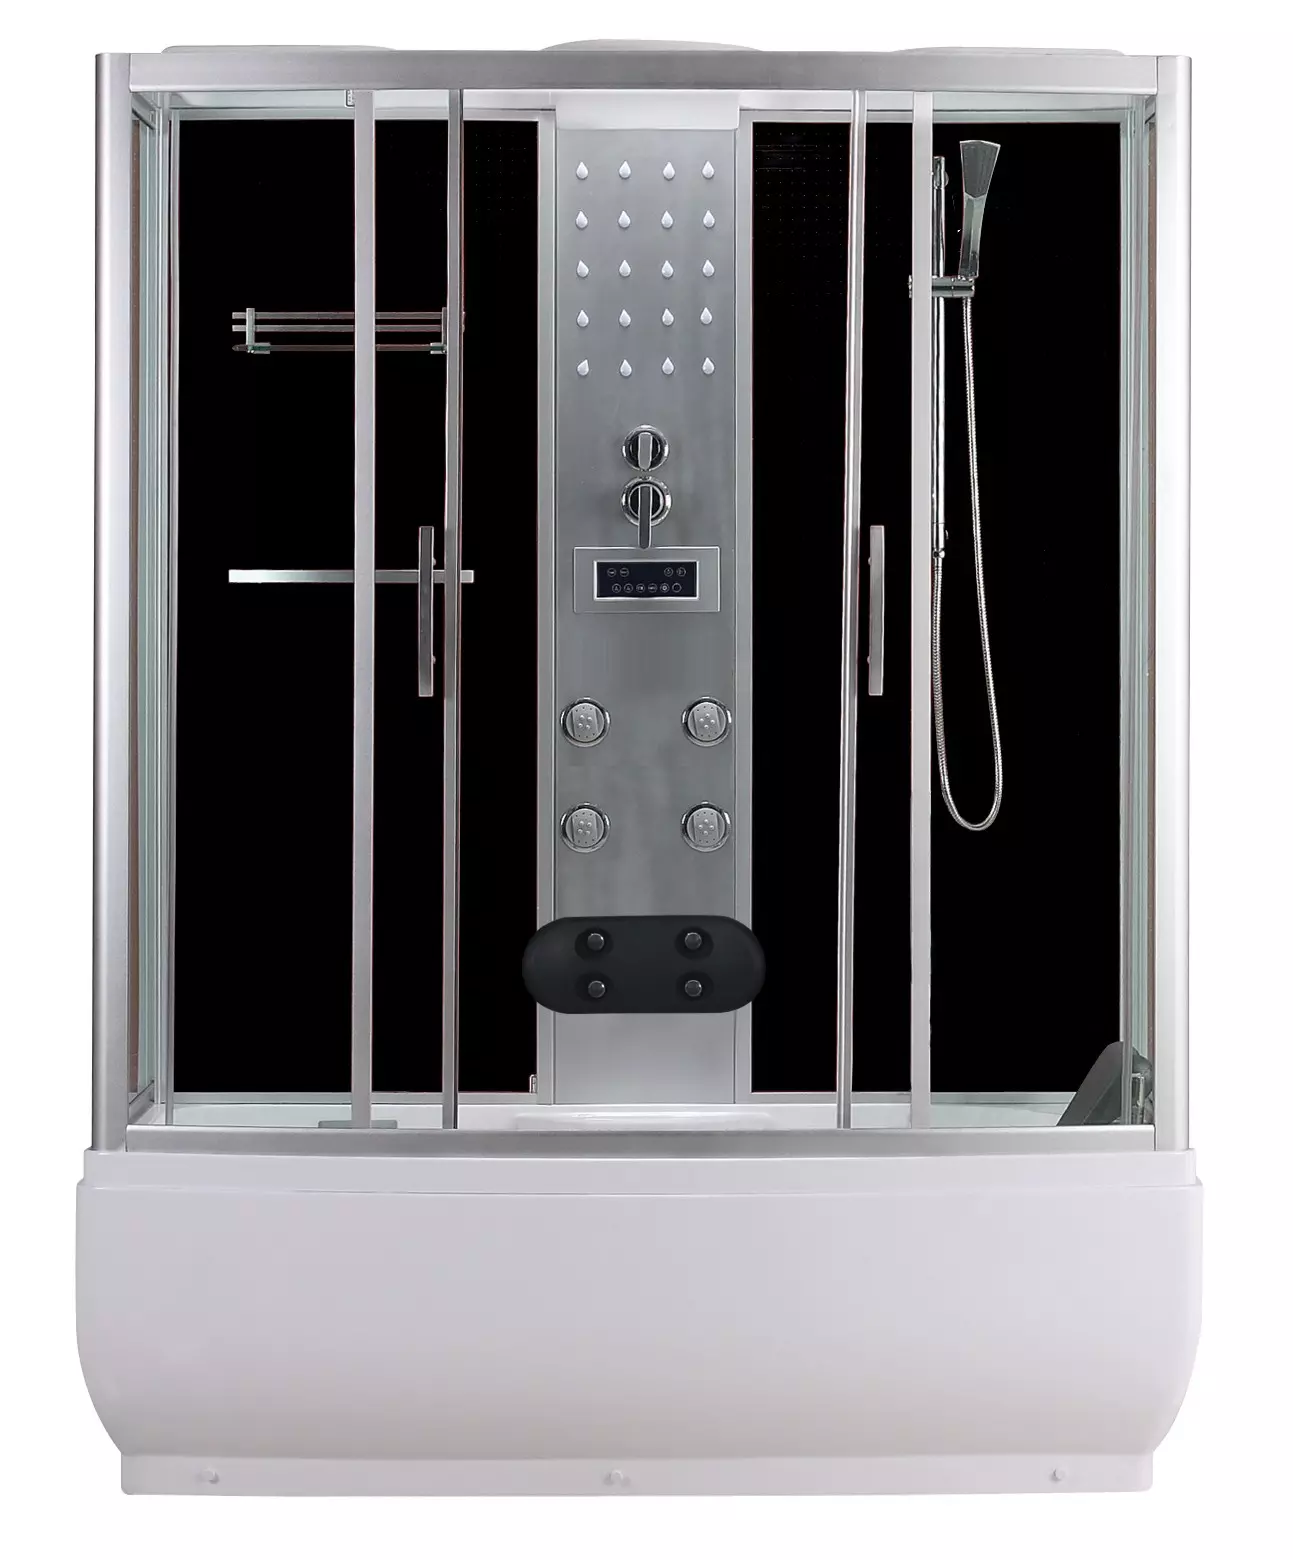 SANOTECHNIK NEVADA 150 hidromasszázs zuhanykabin & fürdőkád elektronikával